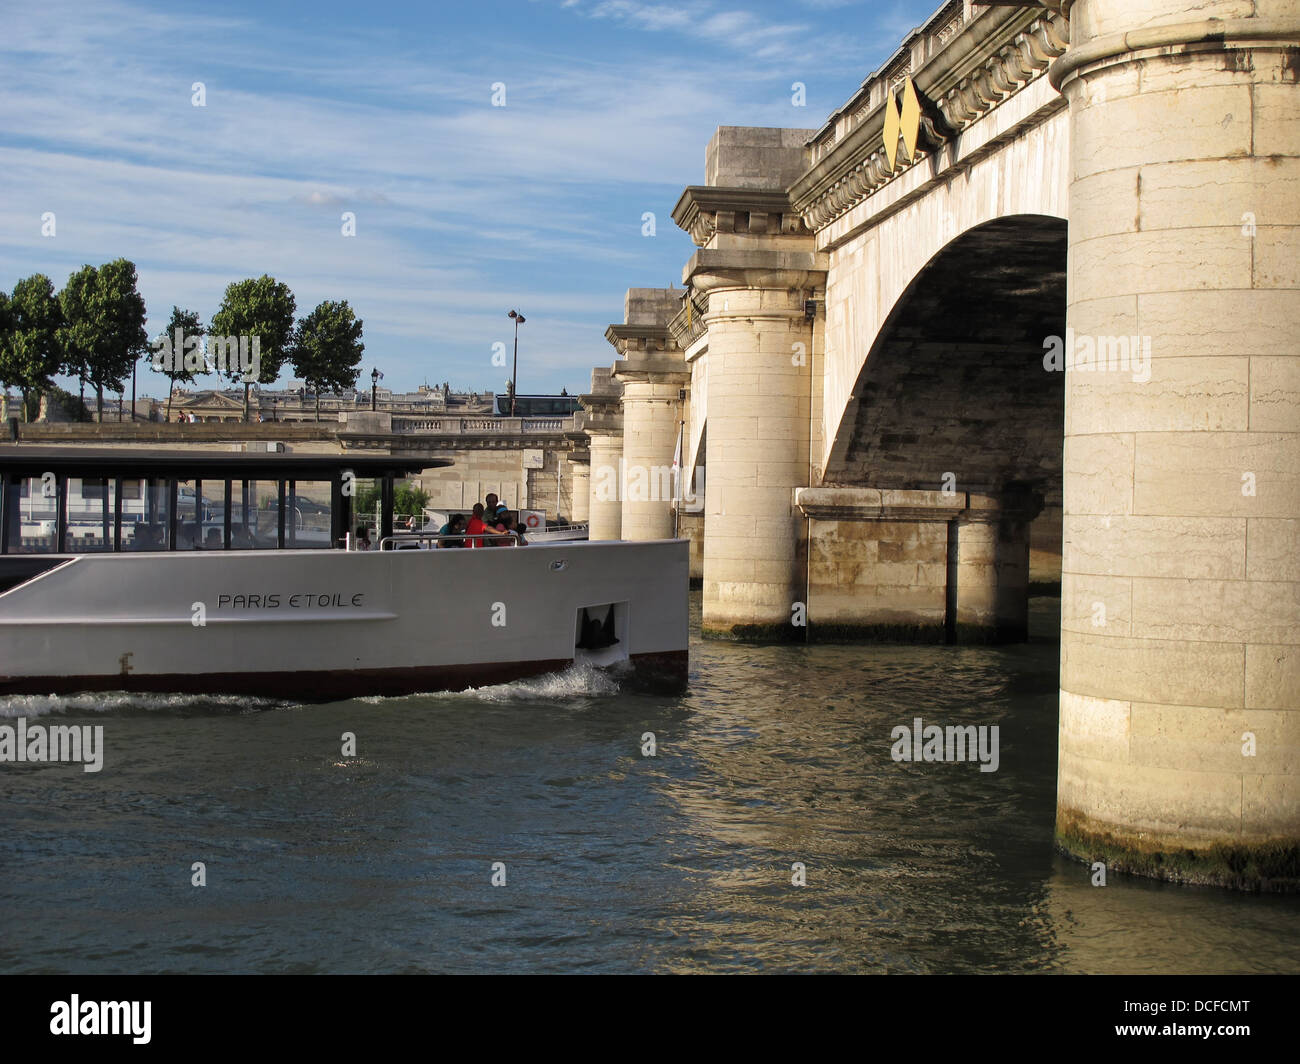 Bateau Mouche,Pont de la Concorde,Concorde Place,Seine river,Paris, France Stock Photo